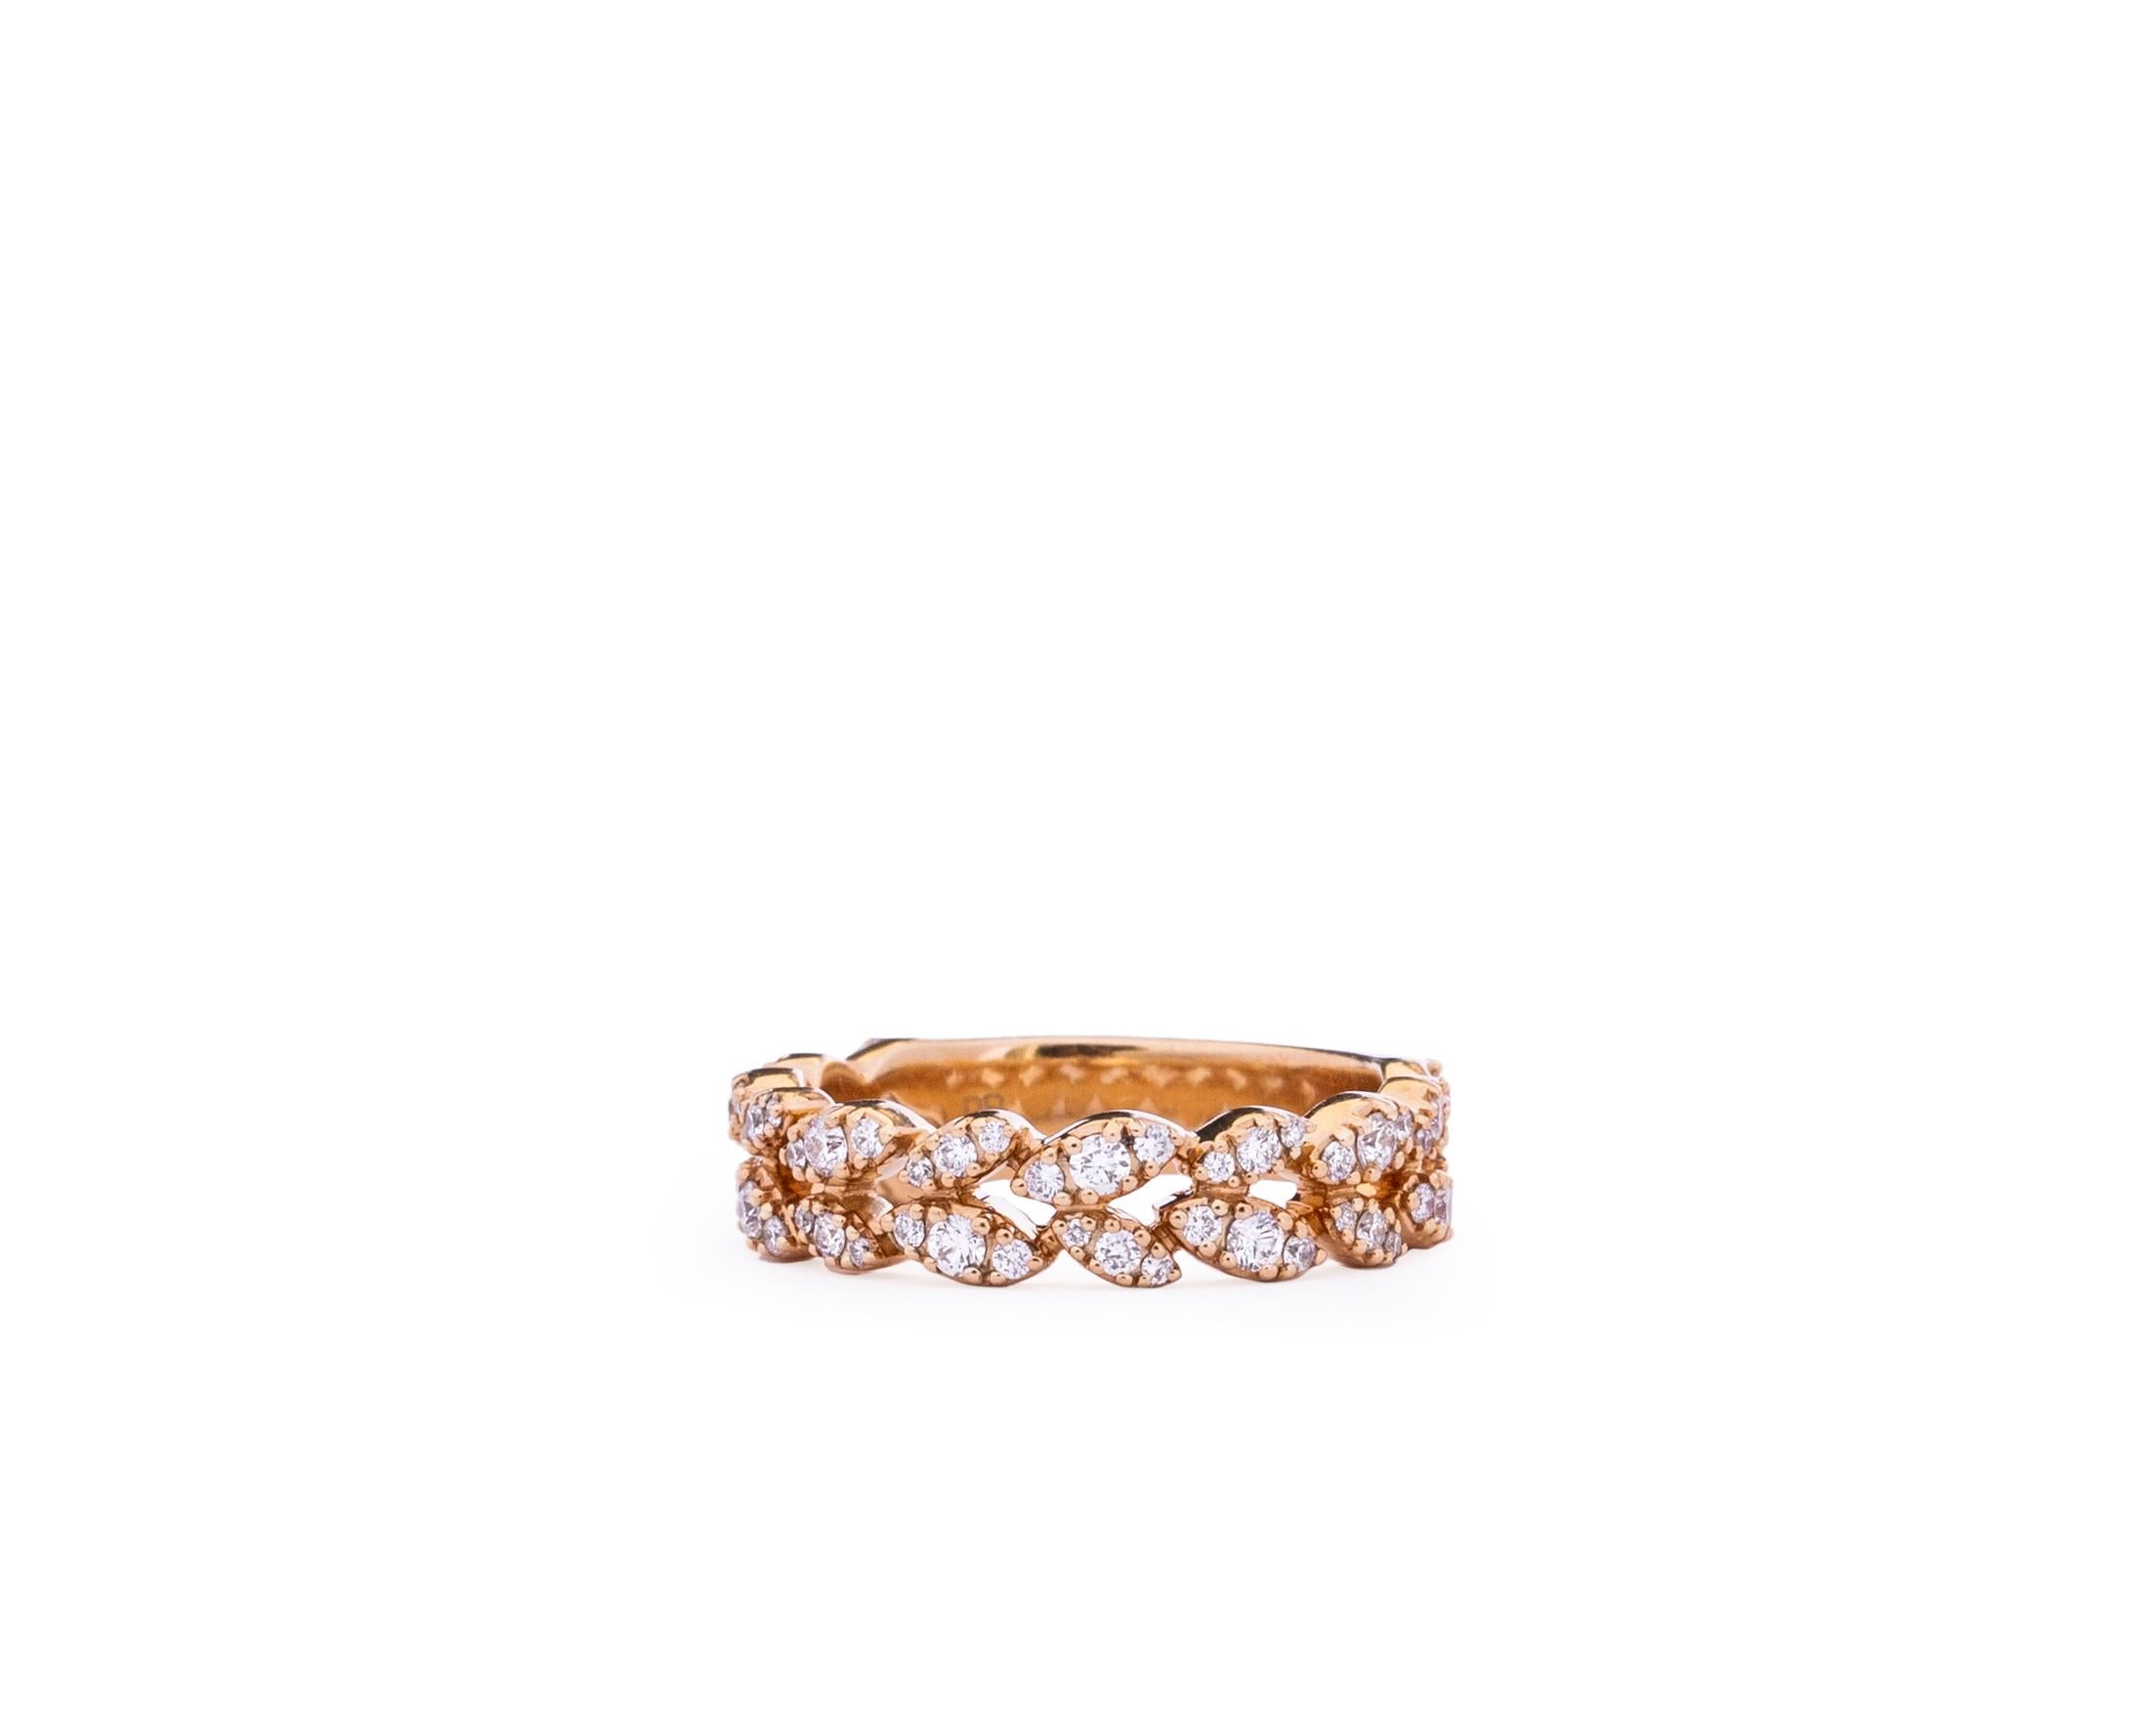 Modern 1 Carat Diamond Ring Band in 18 Karat Gold